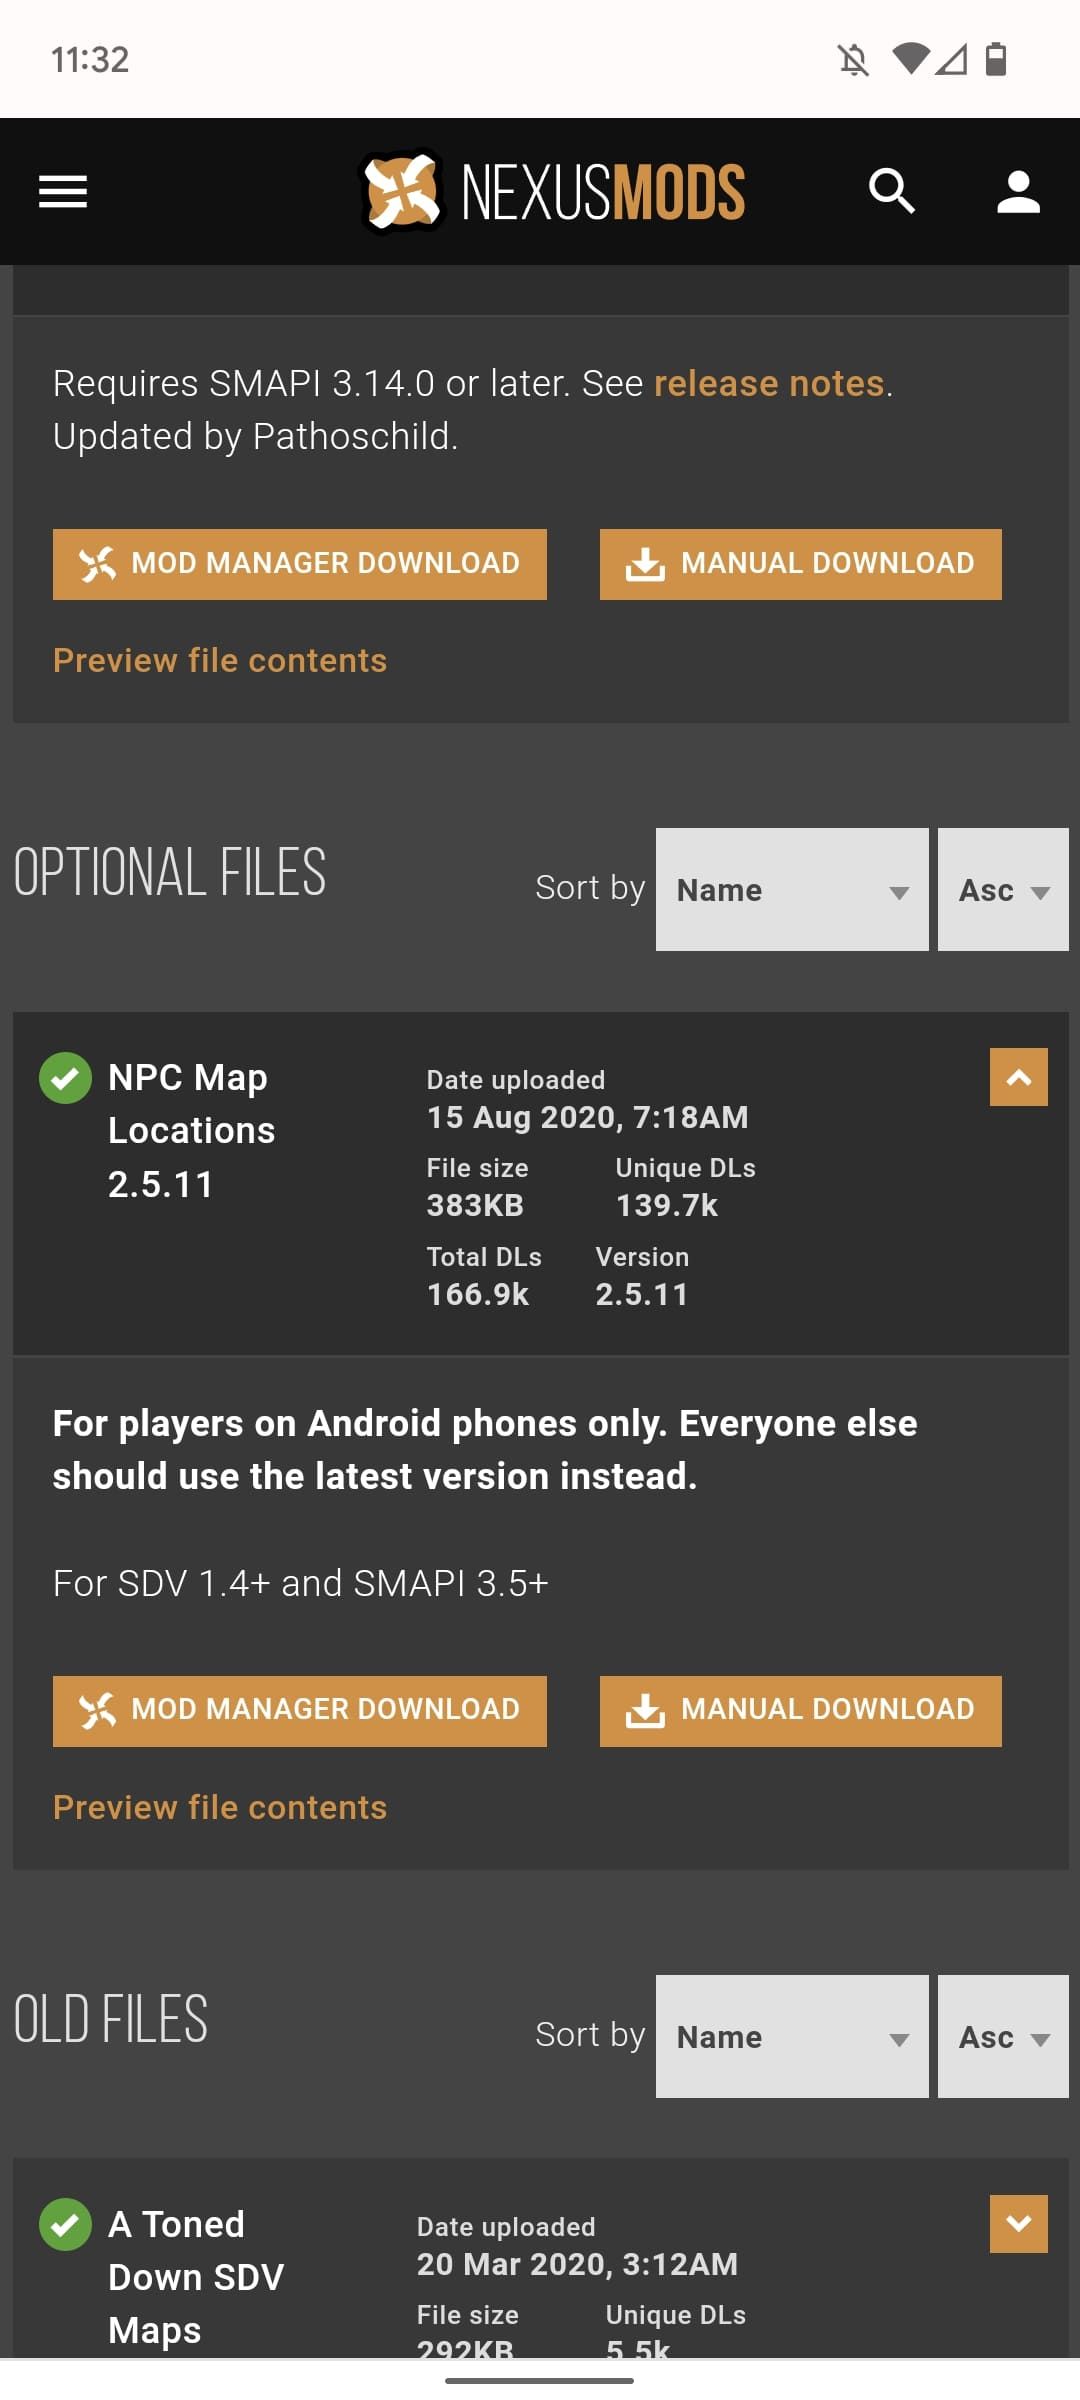 captura de tela do site Nexus Mods